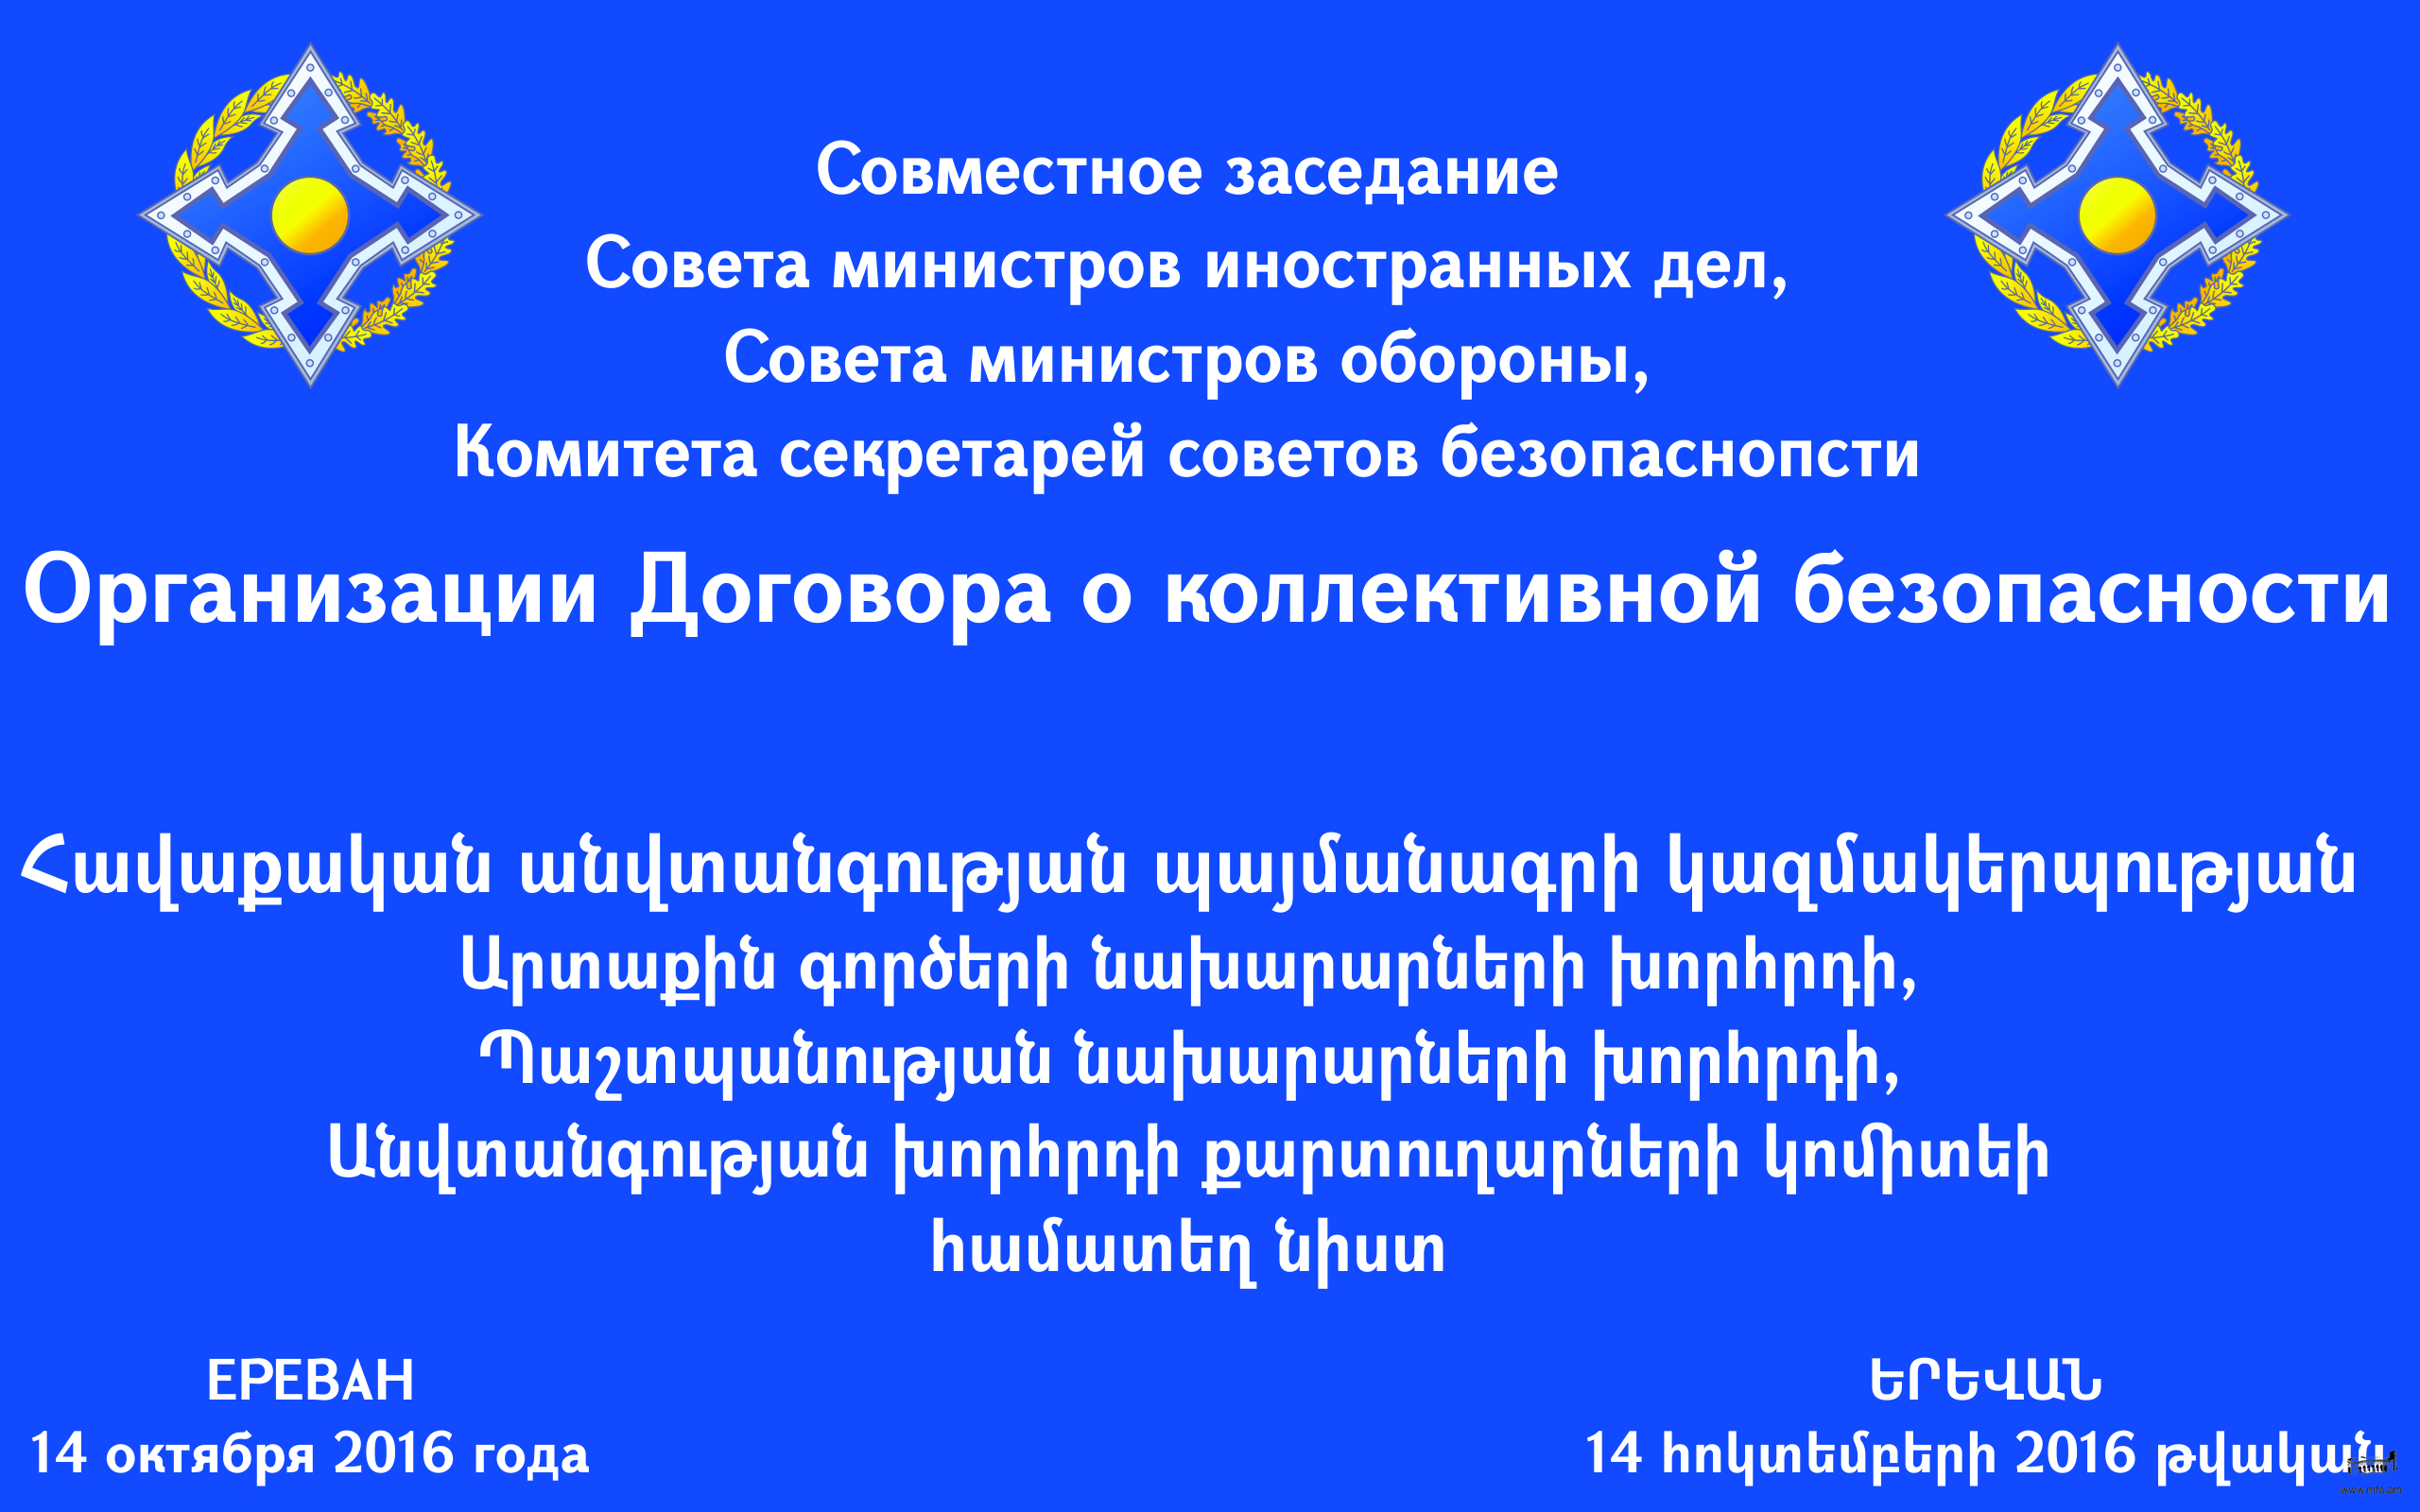 Երևանում տեղի կունենա ՀԱՊԿ կանոնադրական մարմինների համատեղ նիստ